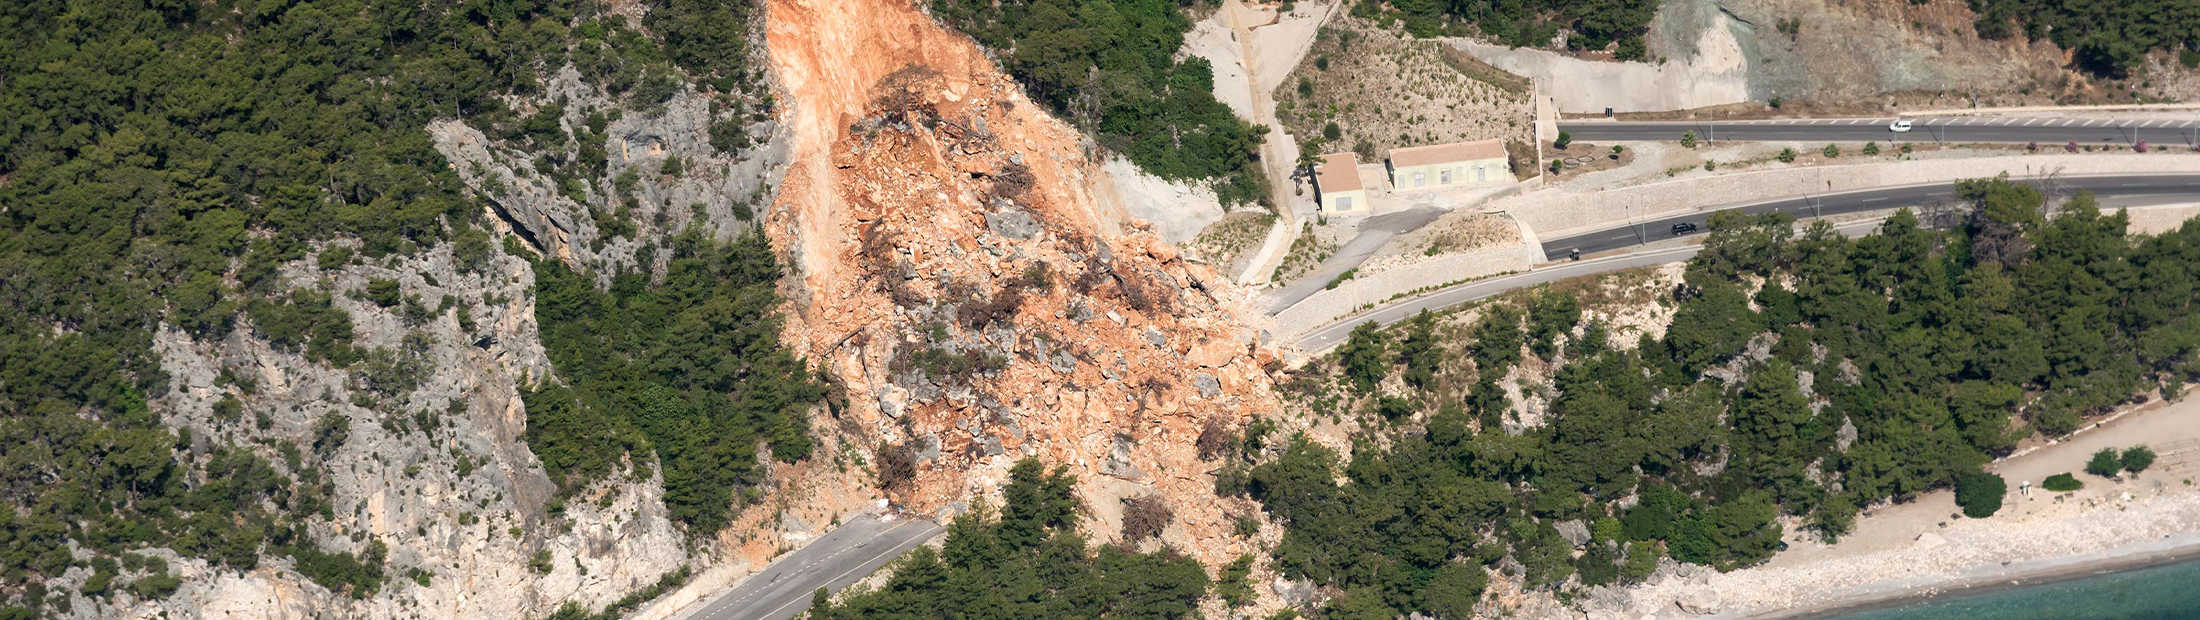 Featured image of landslide